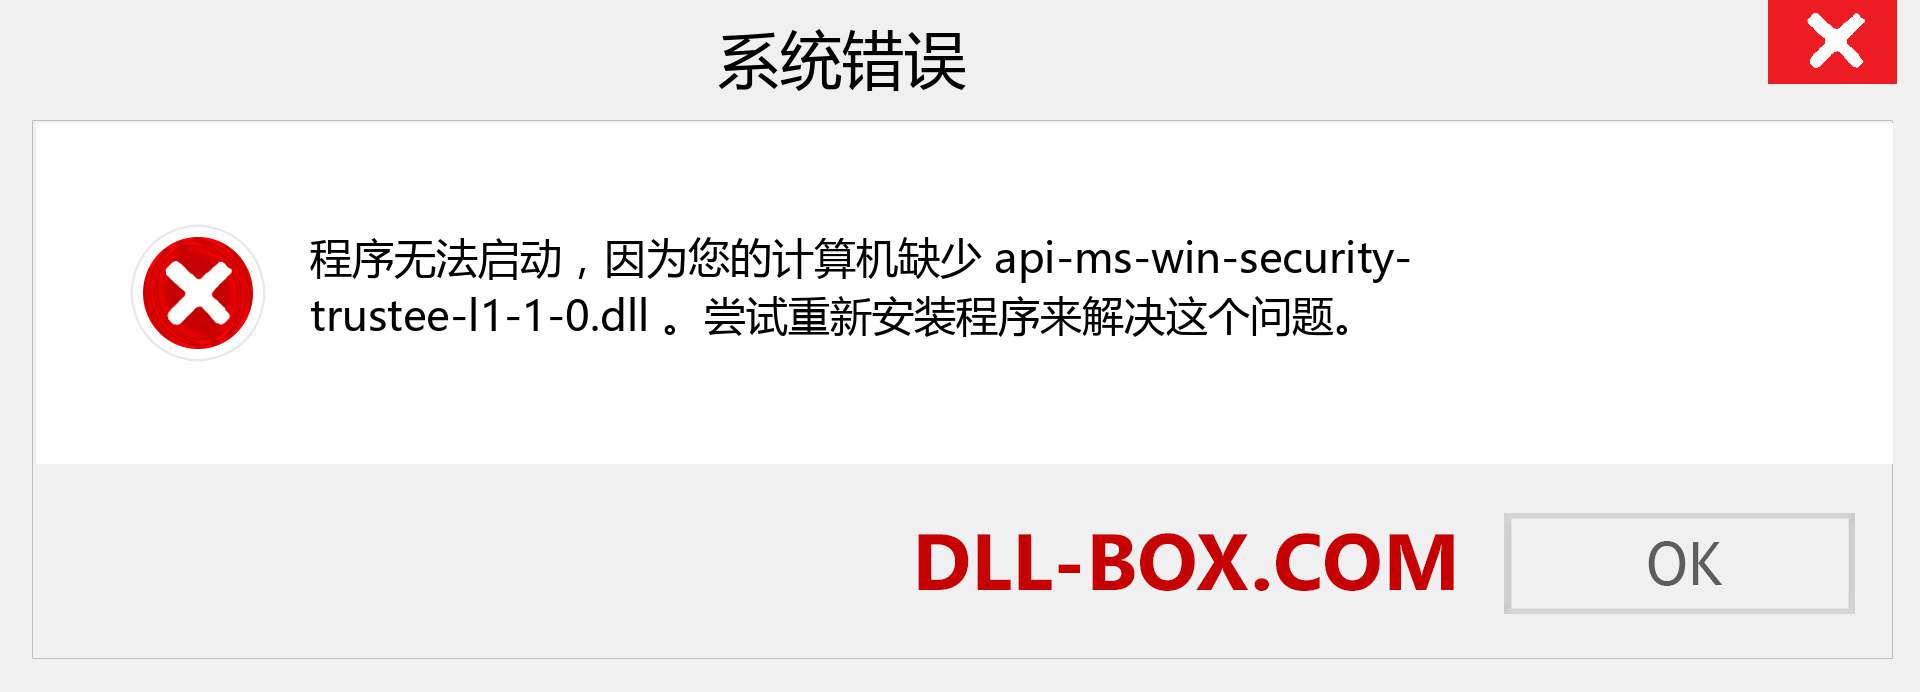 api-ms-win-security-trustee-l1-1-0.dll 文件丢失？。 适用于 Windows 7、8、10 的下载 - 修复 Windows、照片、图像上的 api-ms-win-security-trustee-l1-1-0 dll 丢失错误